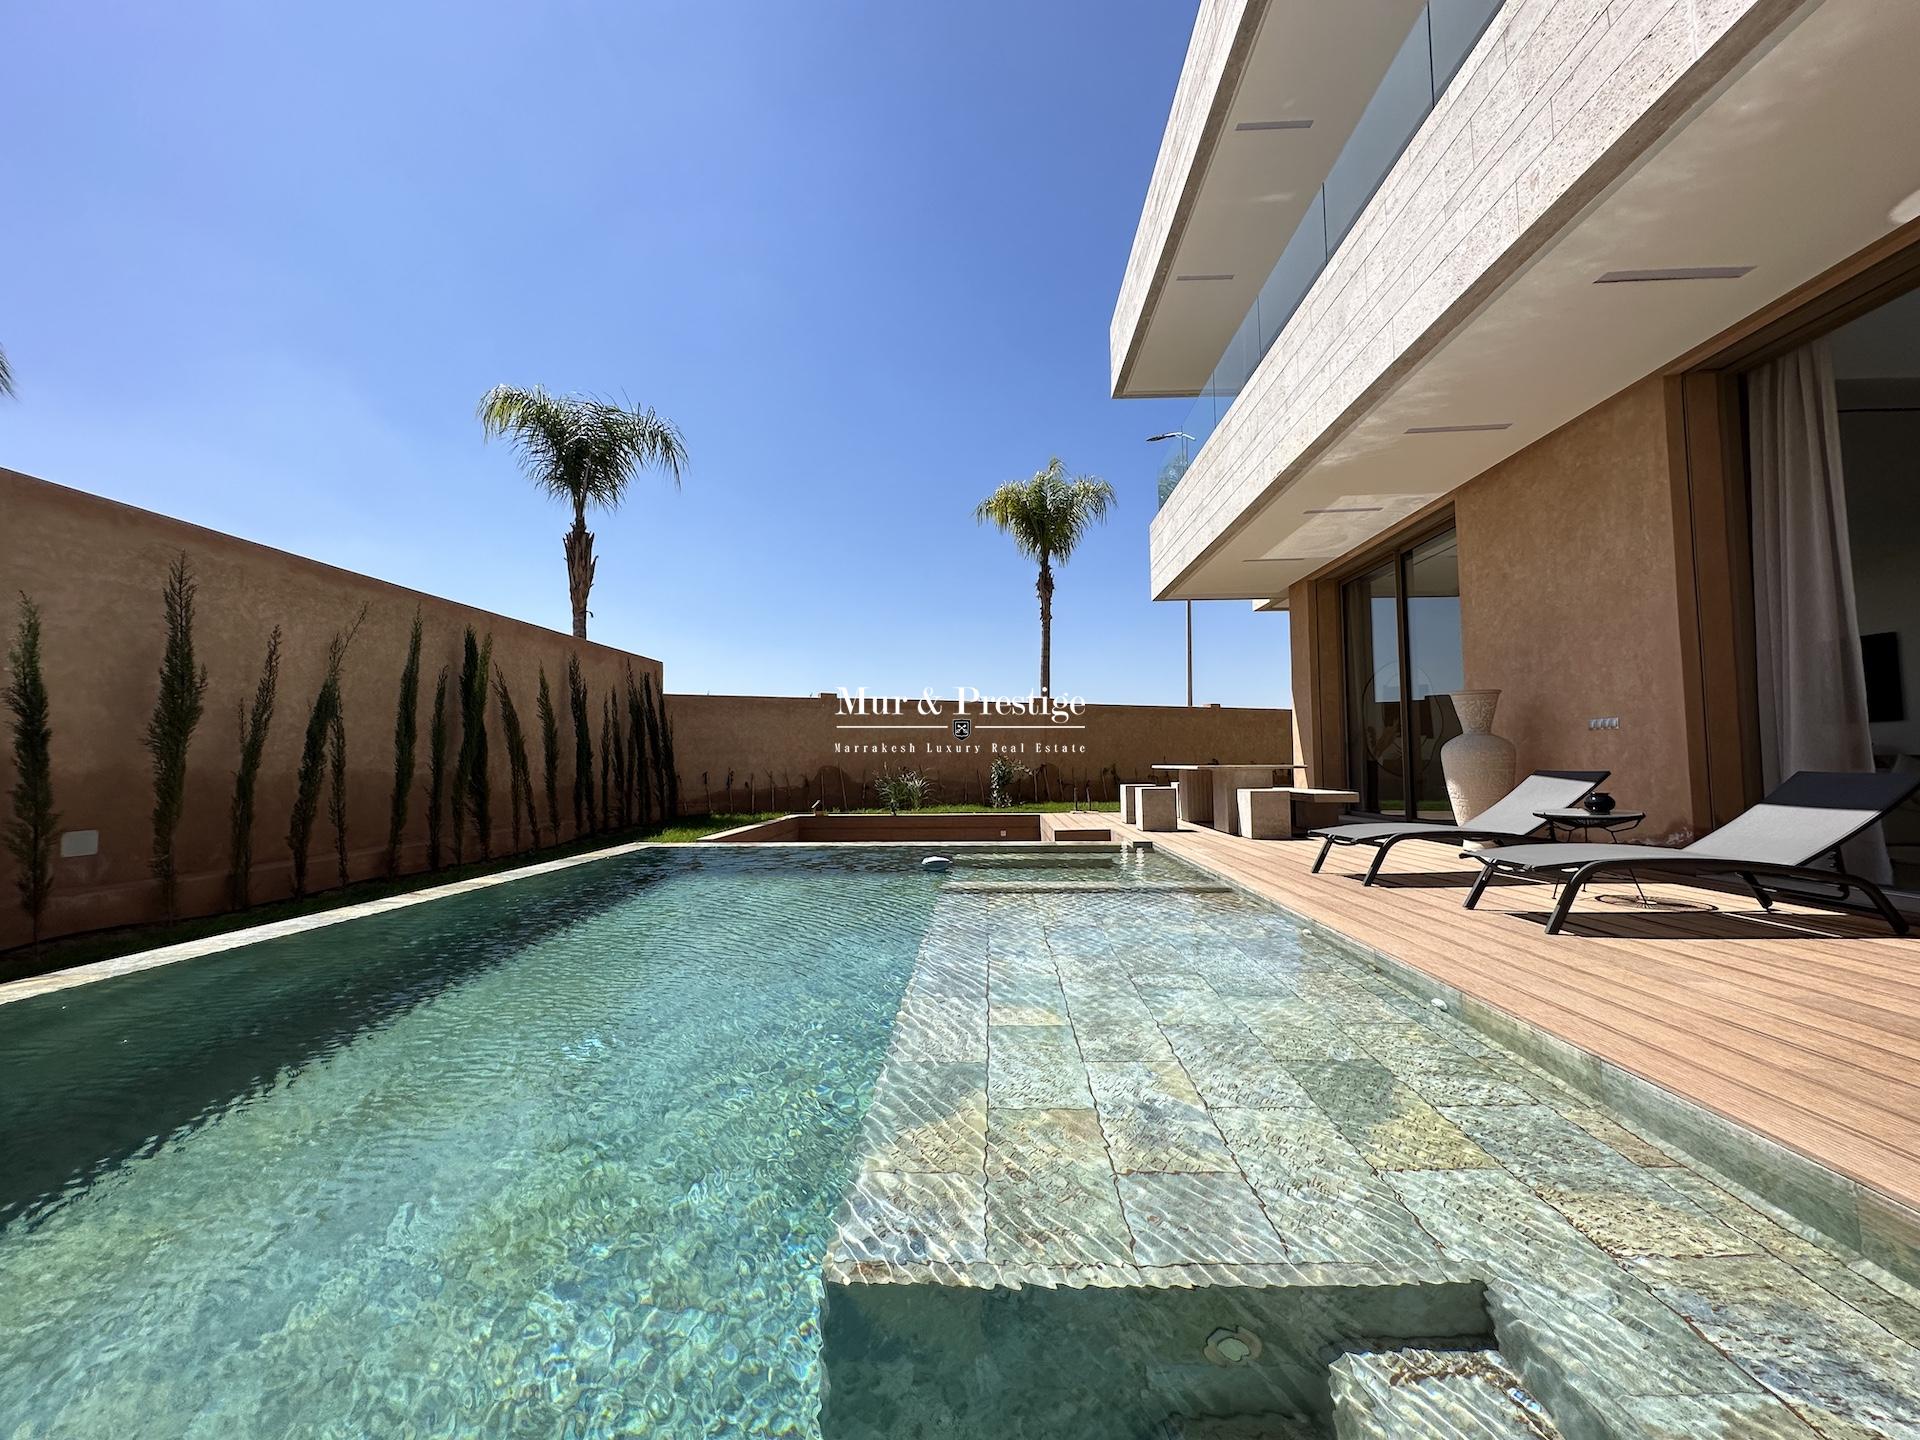 Maison Moderne à Vendre à Marrakech